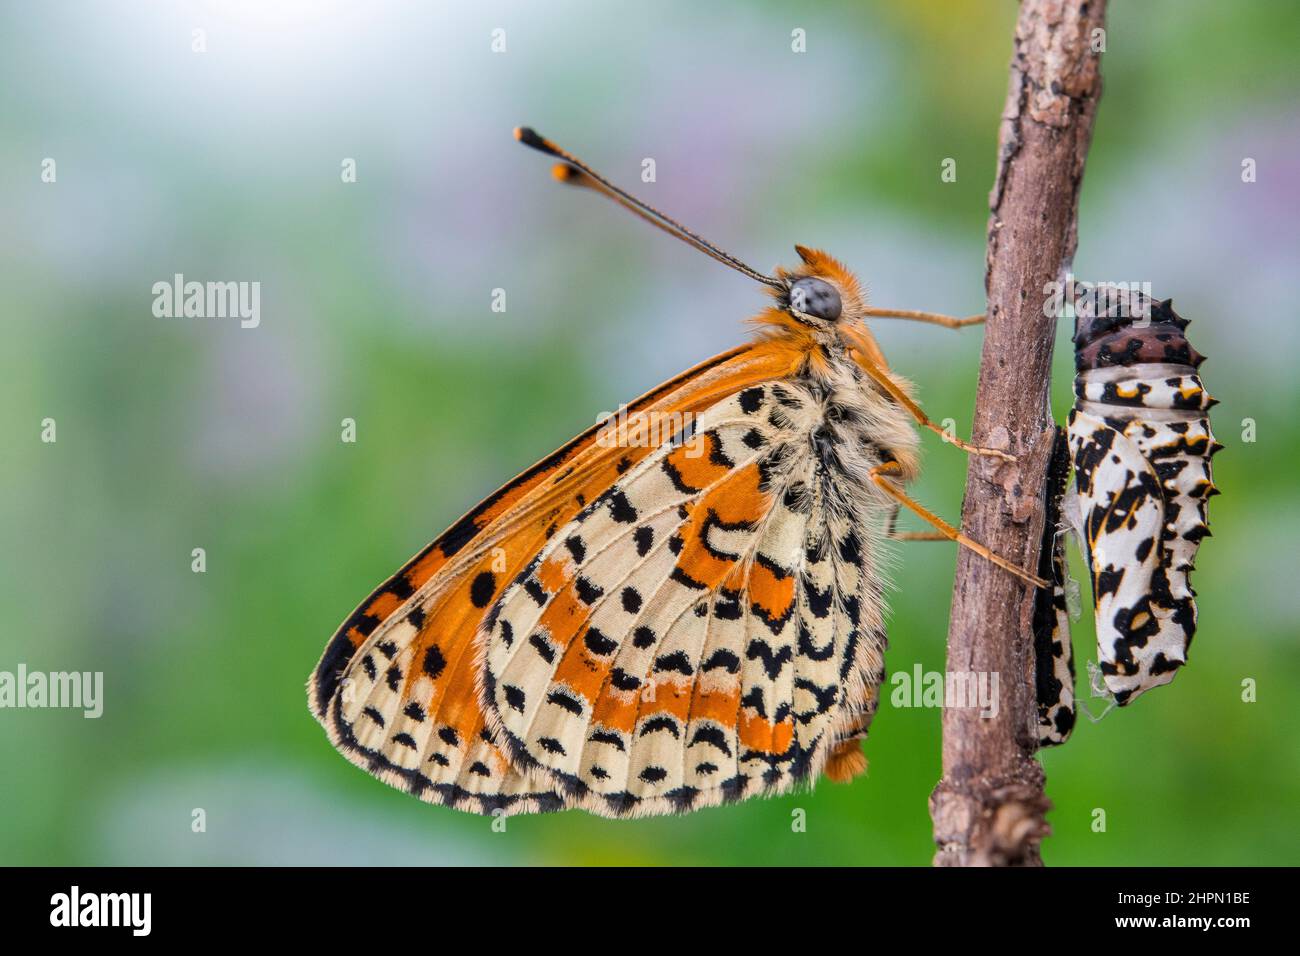 Melitaea didyma, le fritillaire tacheté ou le fritillaire à bande rouge, est un papillon de la famille des Nymphalidae, mâle et chrysalide. Banque D'Images